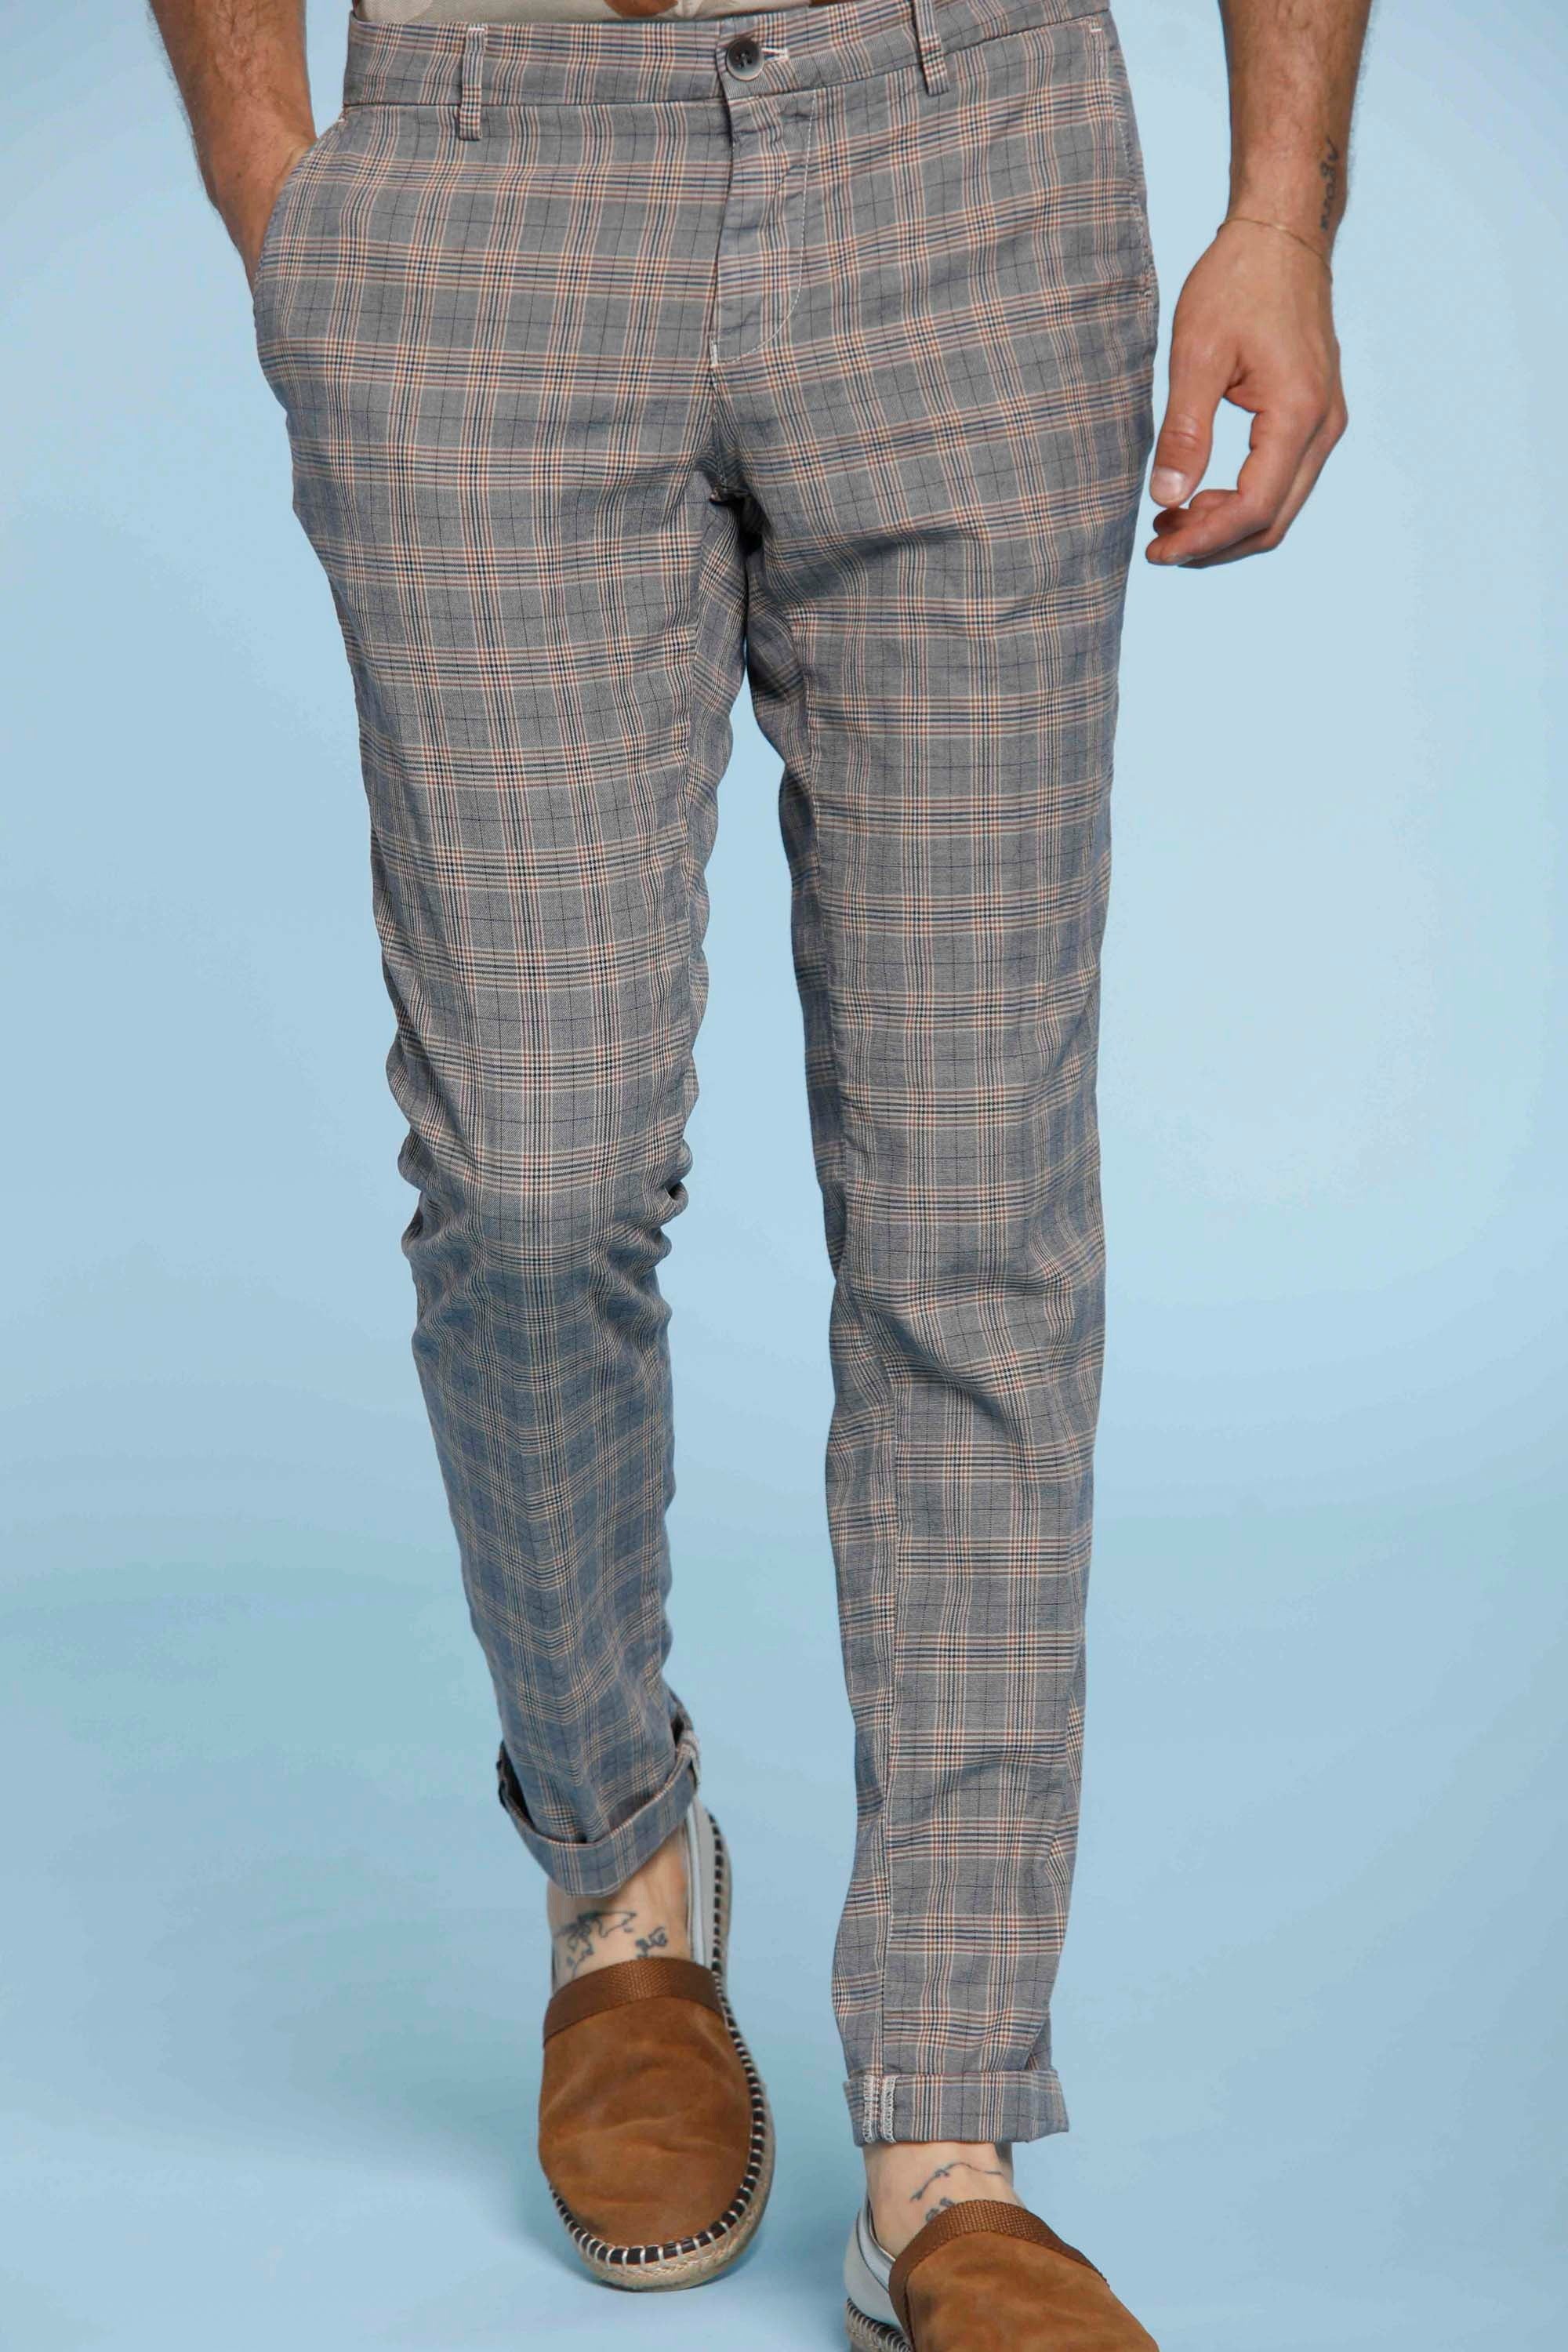 Milano Style pantalone chino uomo in tencel e cotone stampa galles extra slim